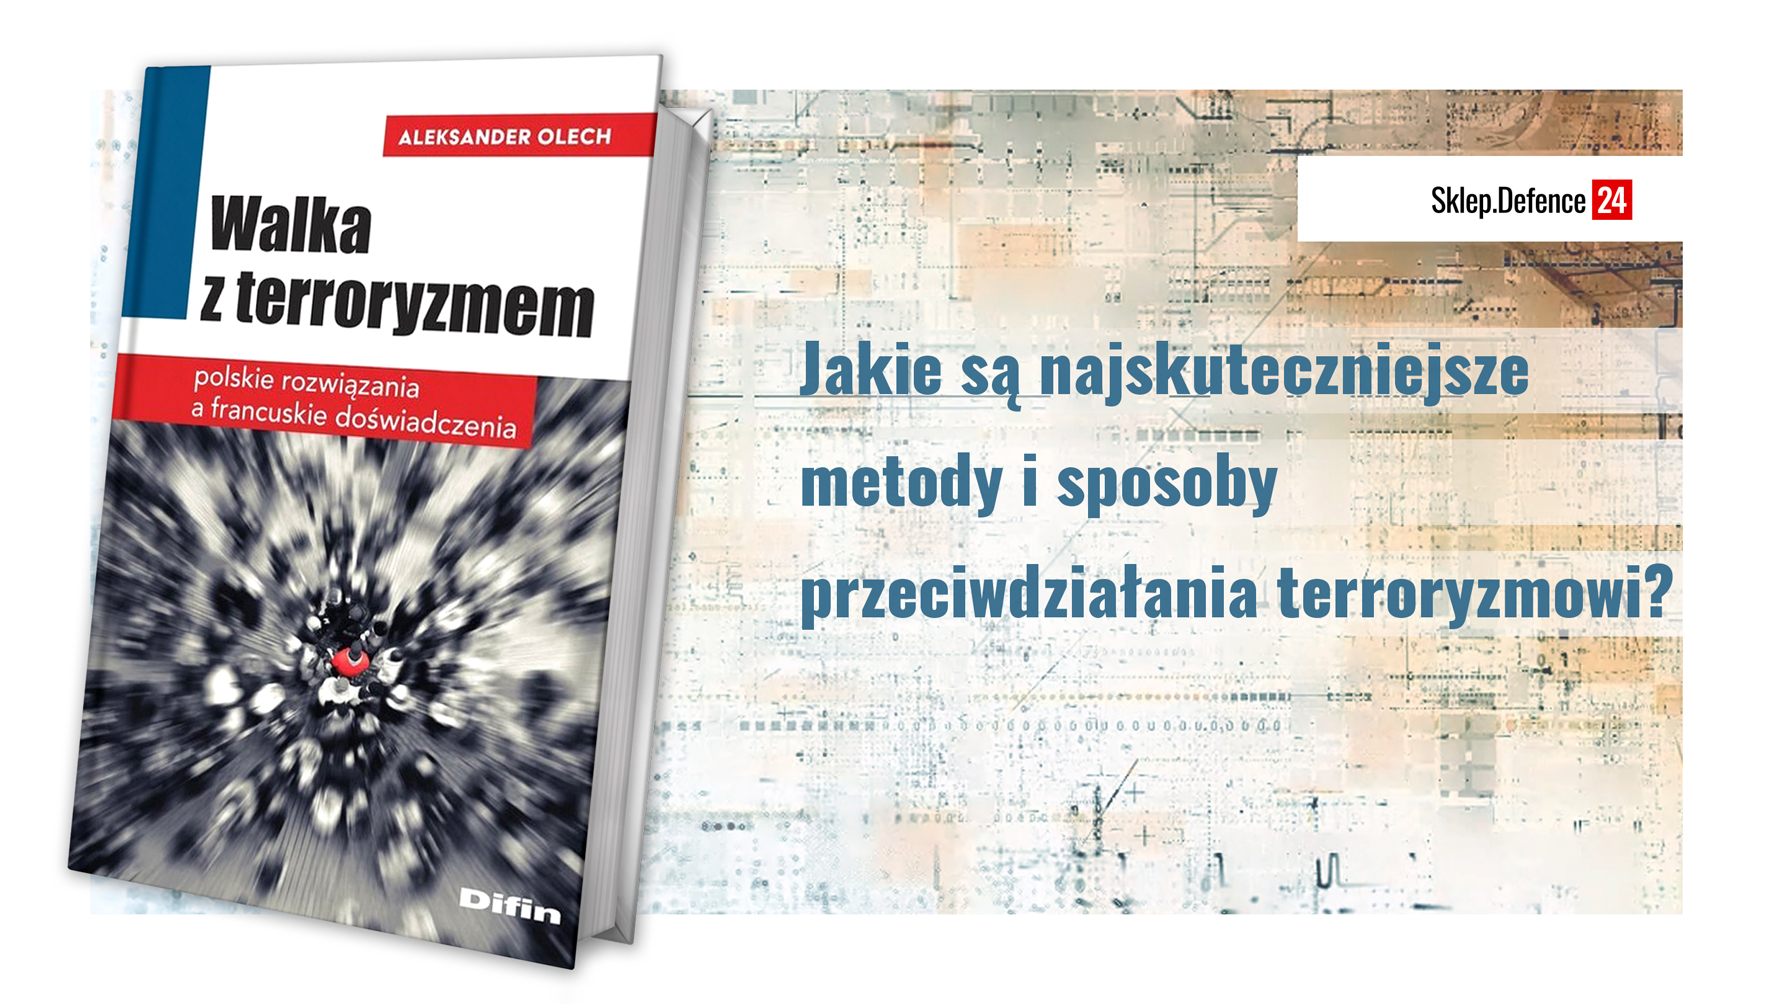 Reklama
link: https://sklep.defence24.pl/produkt/walka-z-terroryzmem-polskie-rozwiazania-a-francuskie-doswiadczenia/